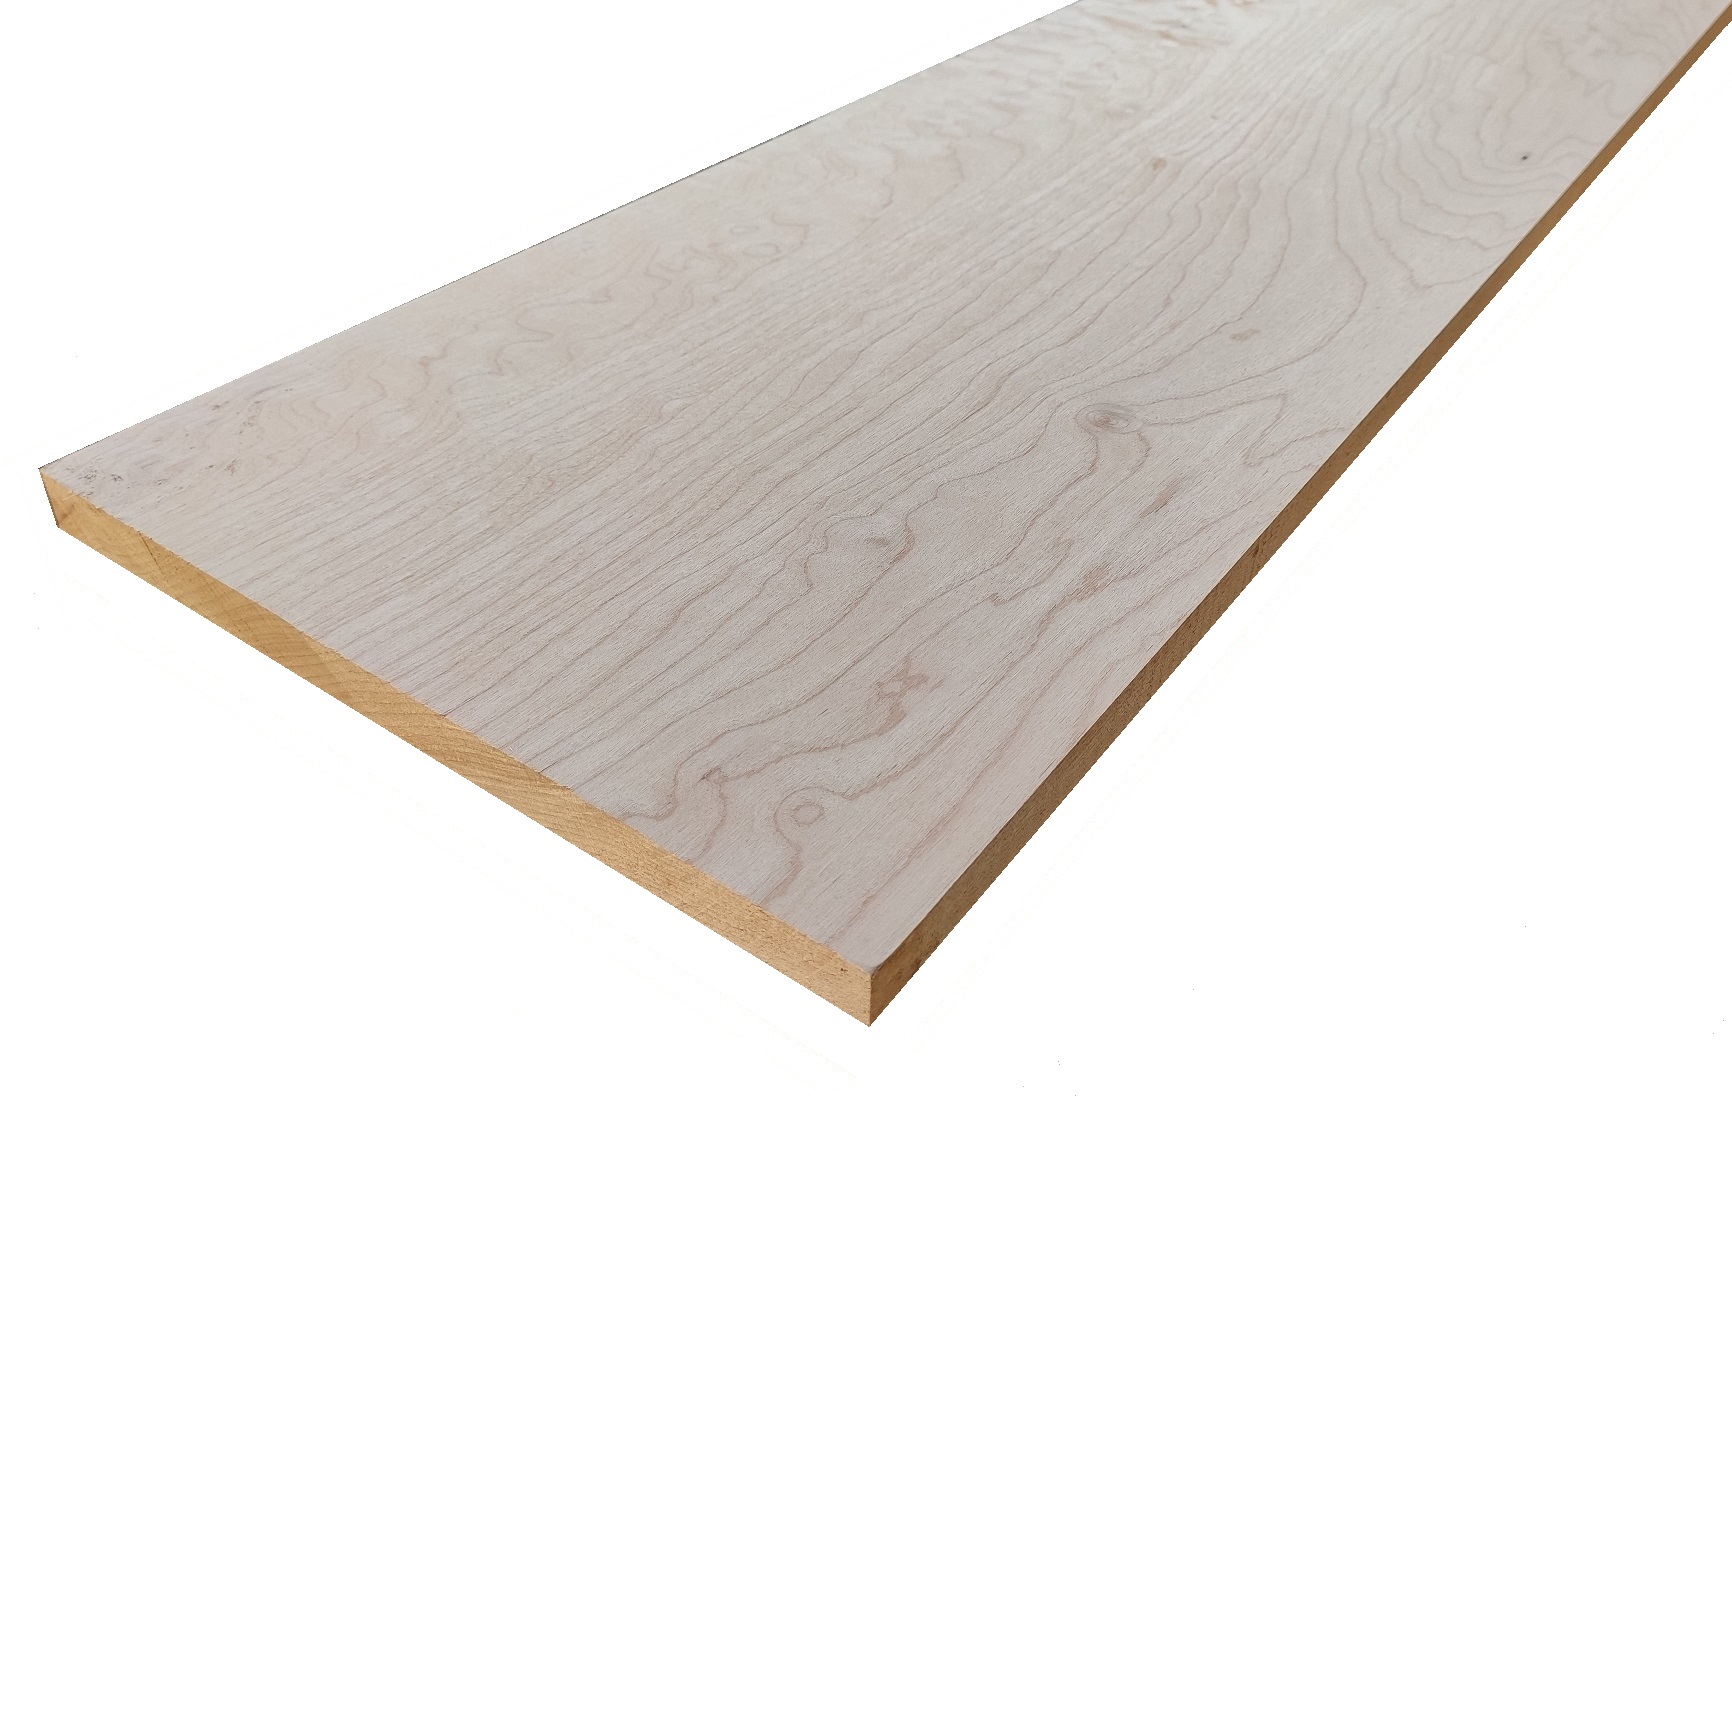 Tavola legno Acero Pacific Coast Maple Refilato Piallato mm 20 x 110 x 1200